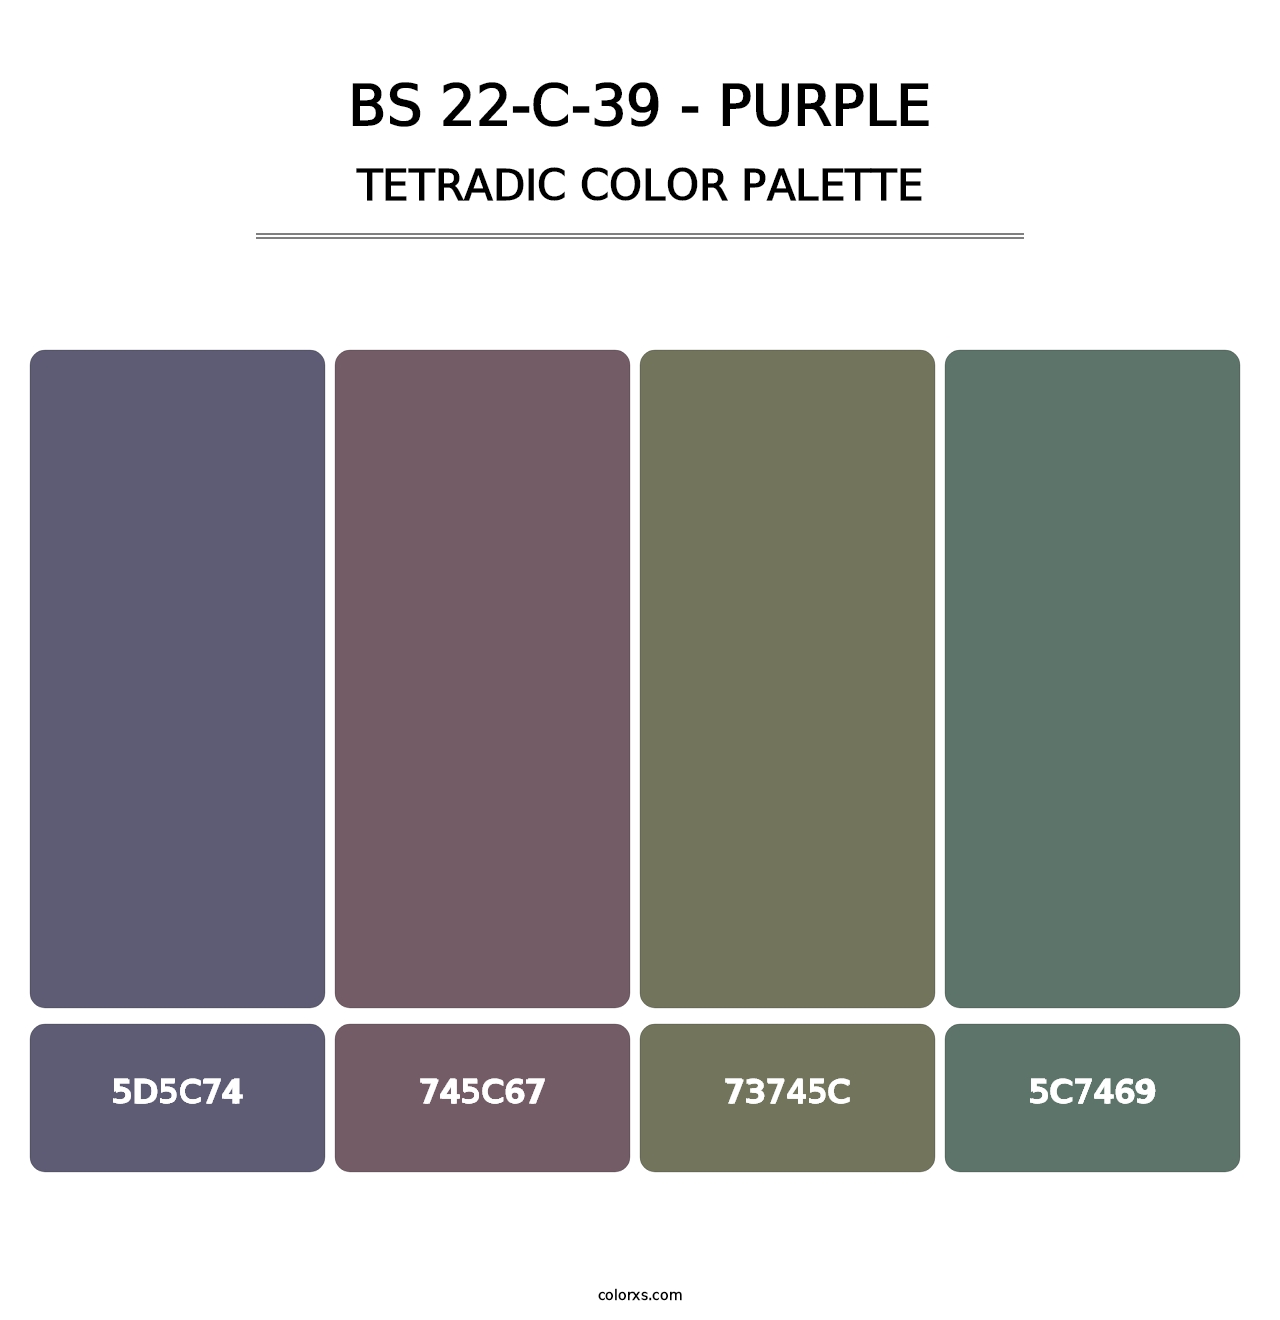 BS 22-C-39 - Purple - Tetradic Color Palette